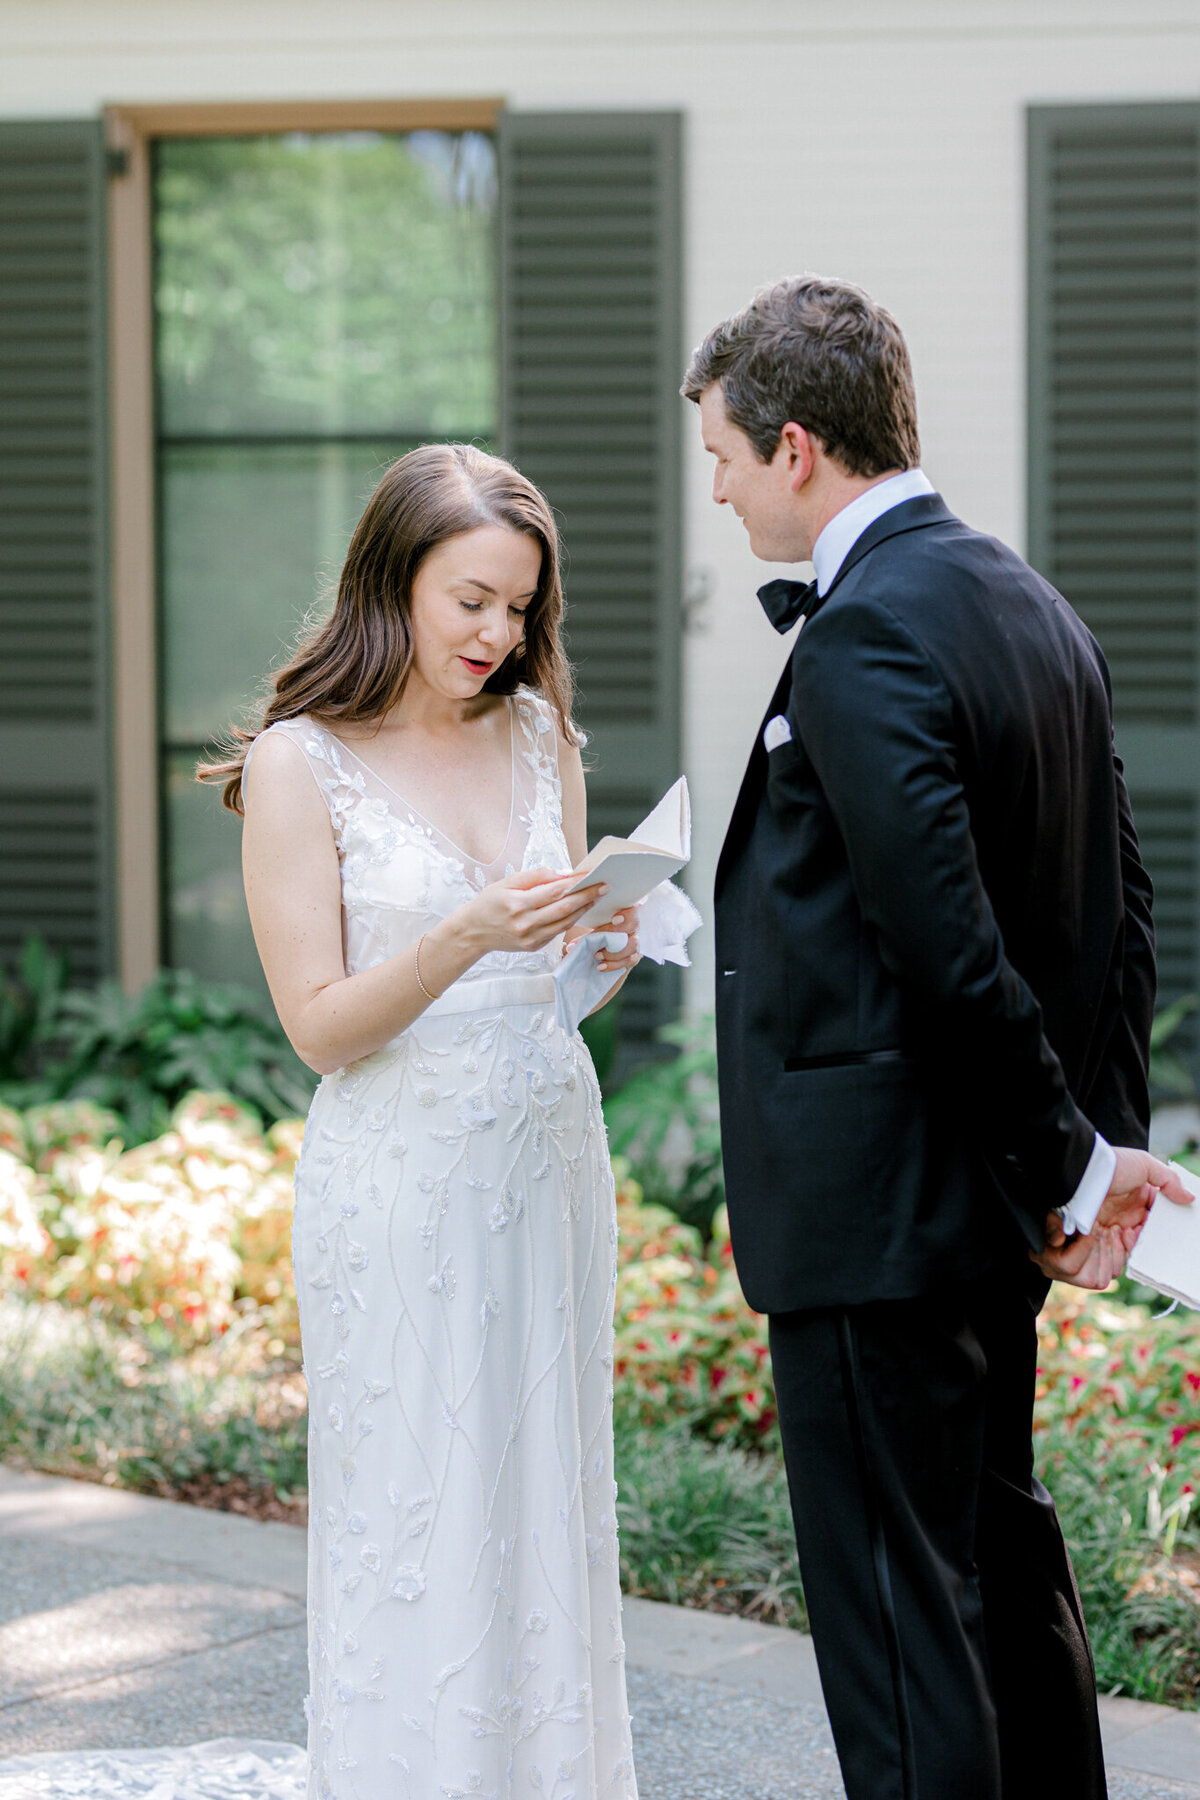 Gena & Matt's Wedding at the Dallas Arboretum | Dallas Wedding Photographer | Sami Kathryn Photography-78